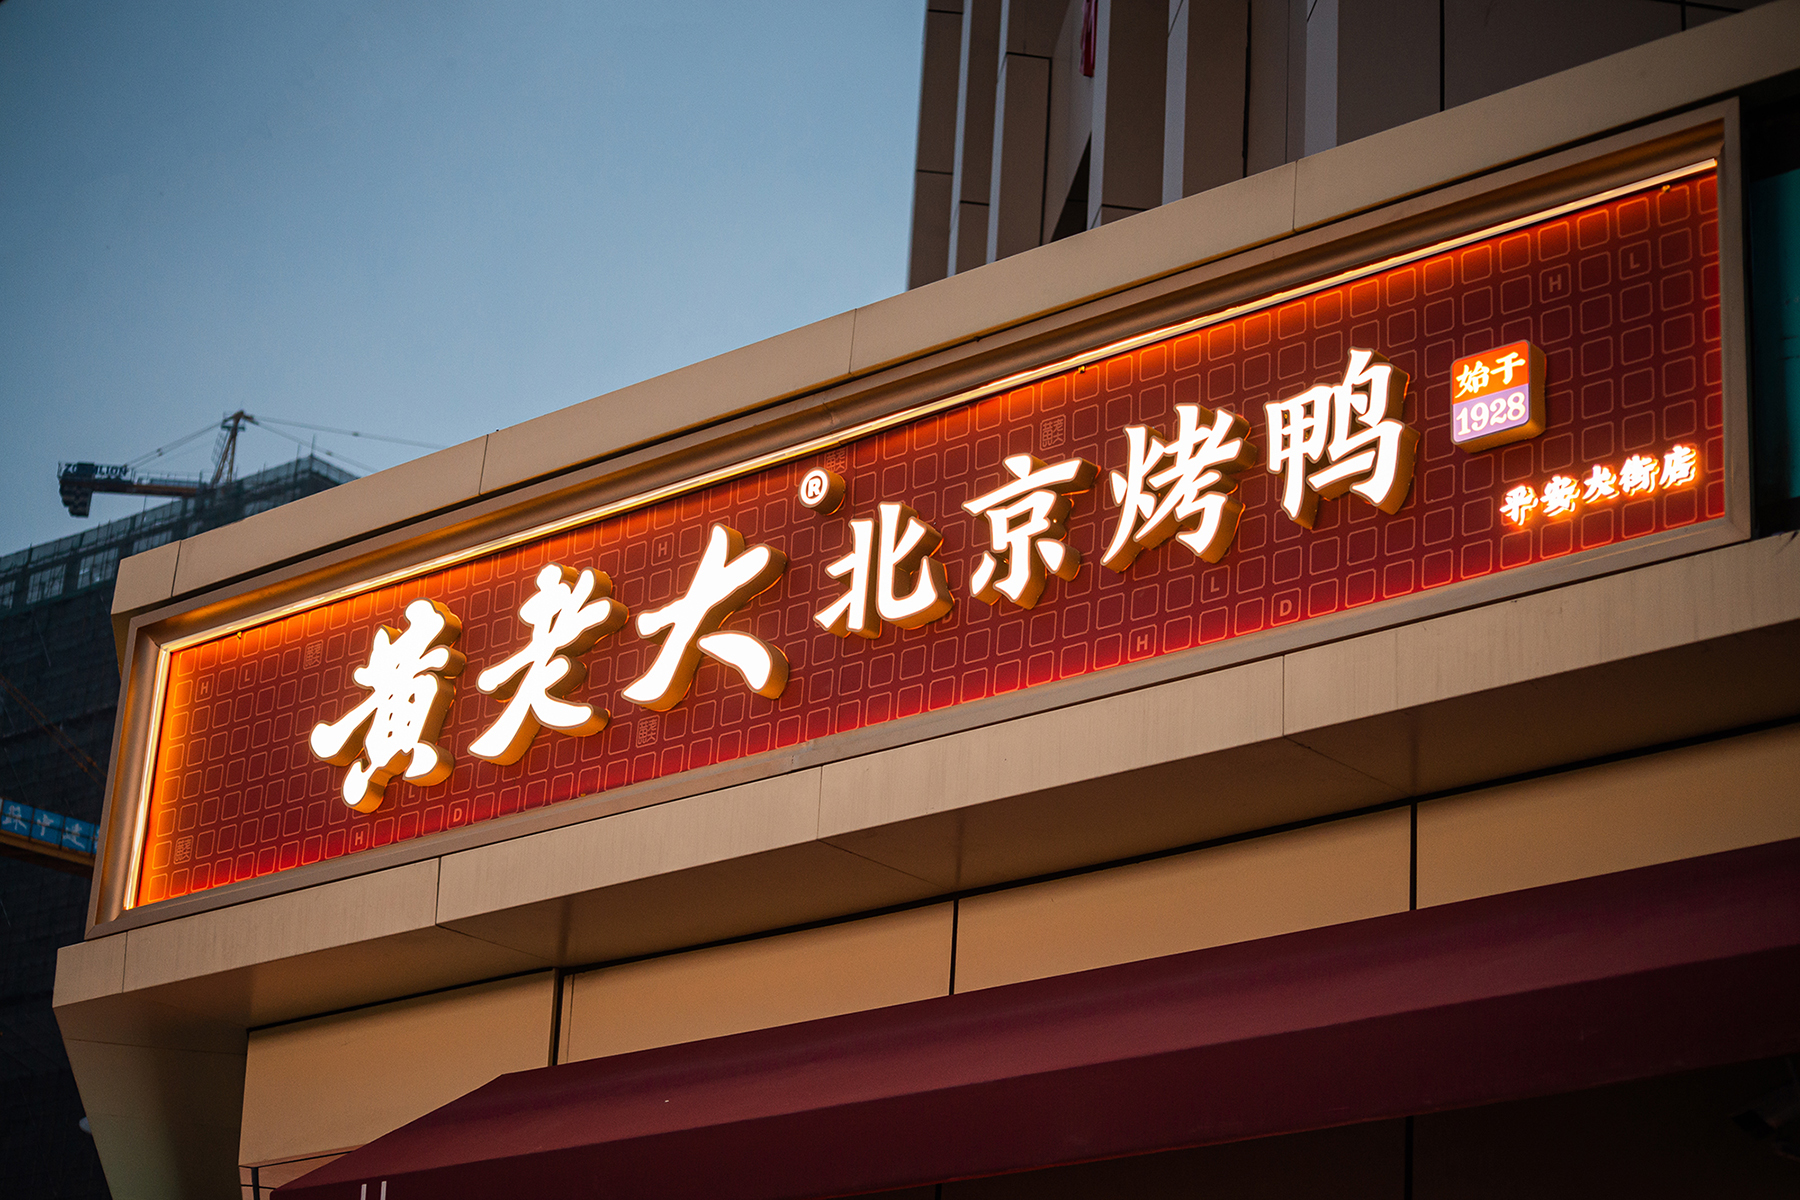 北京烤鸭字体图片